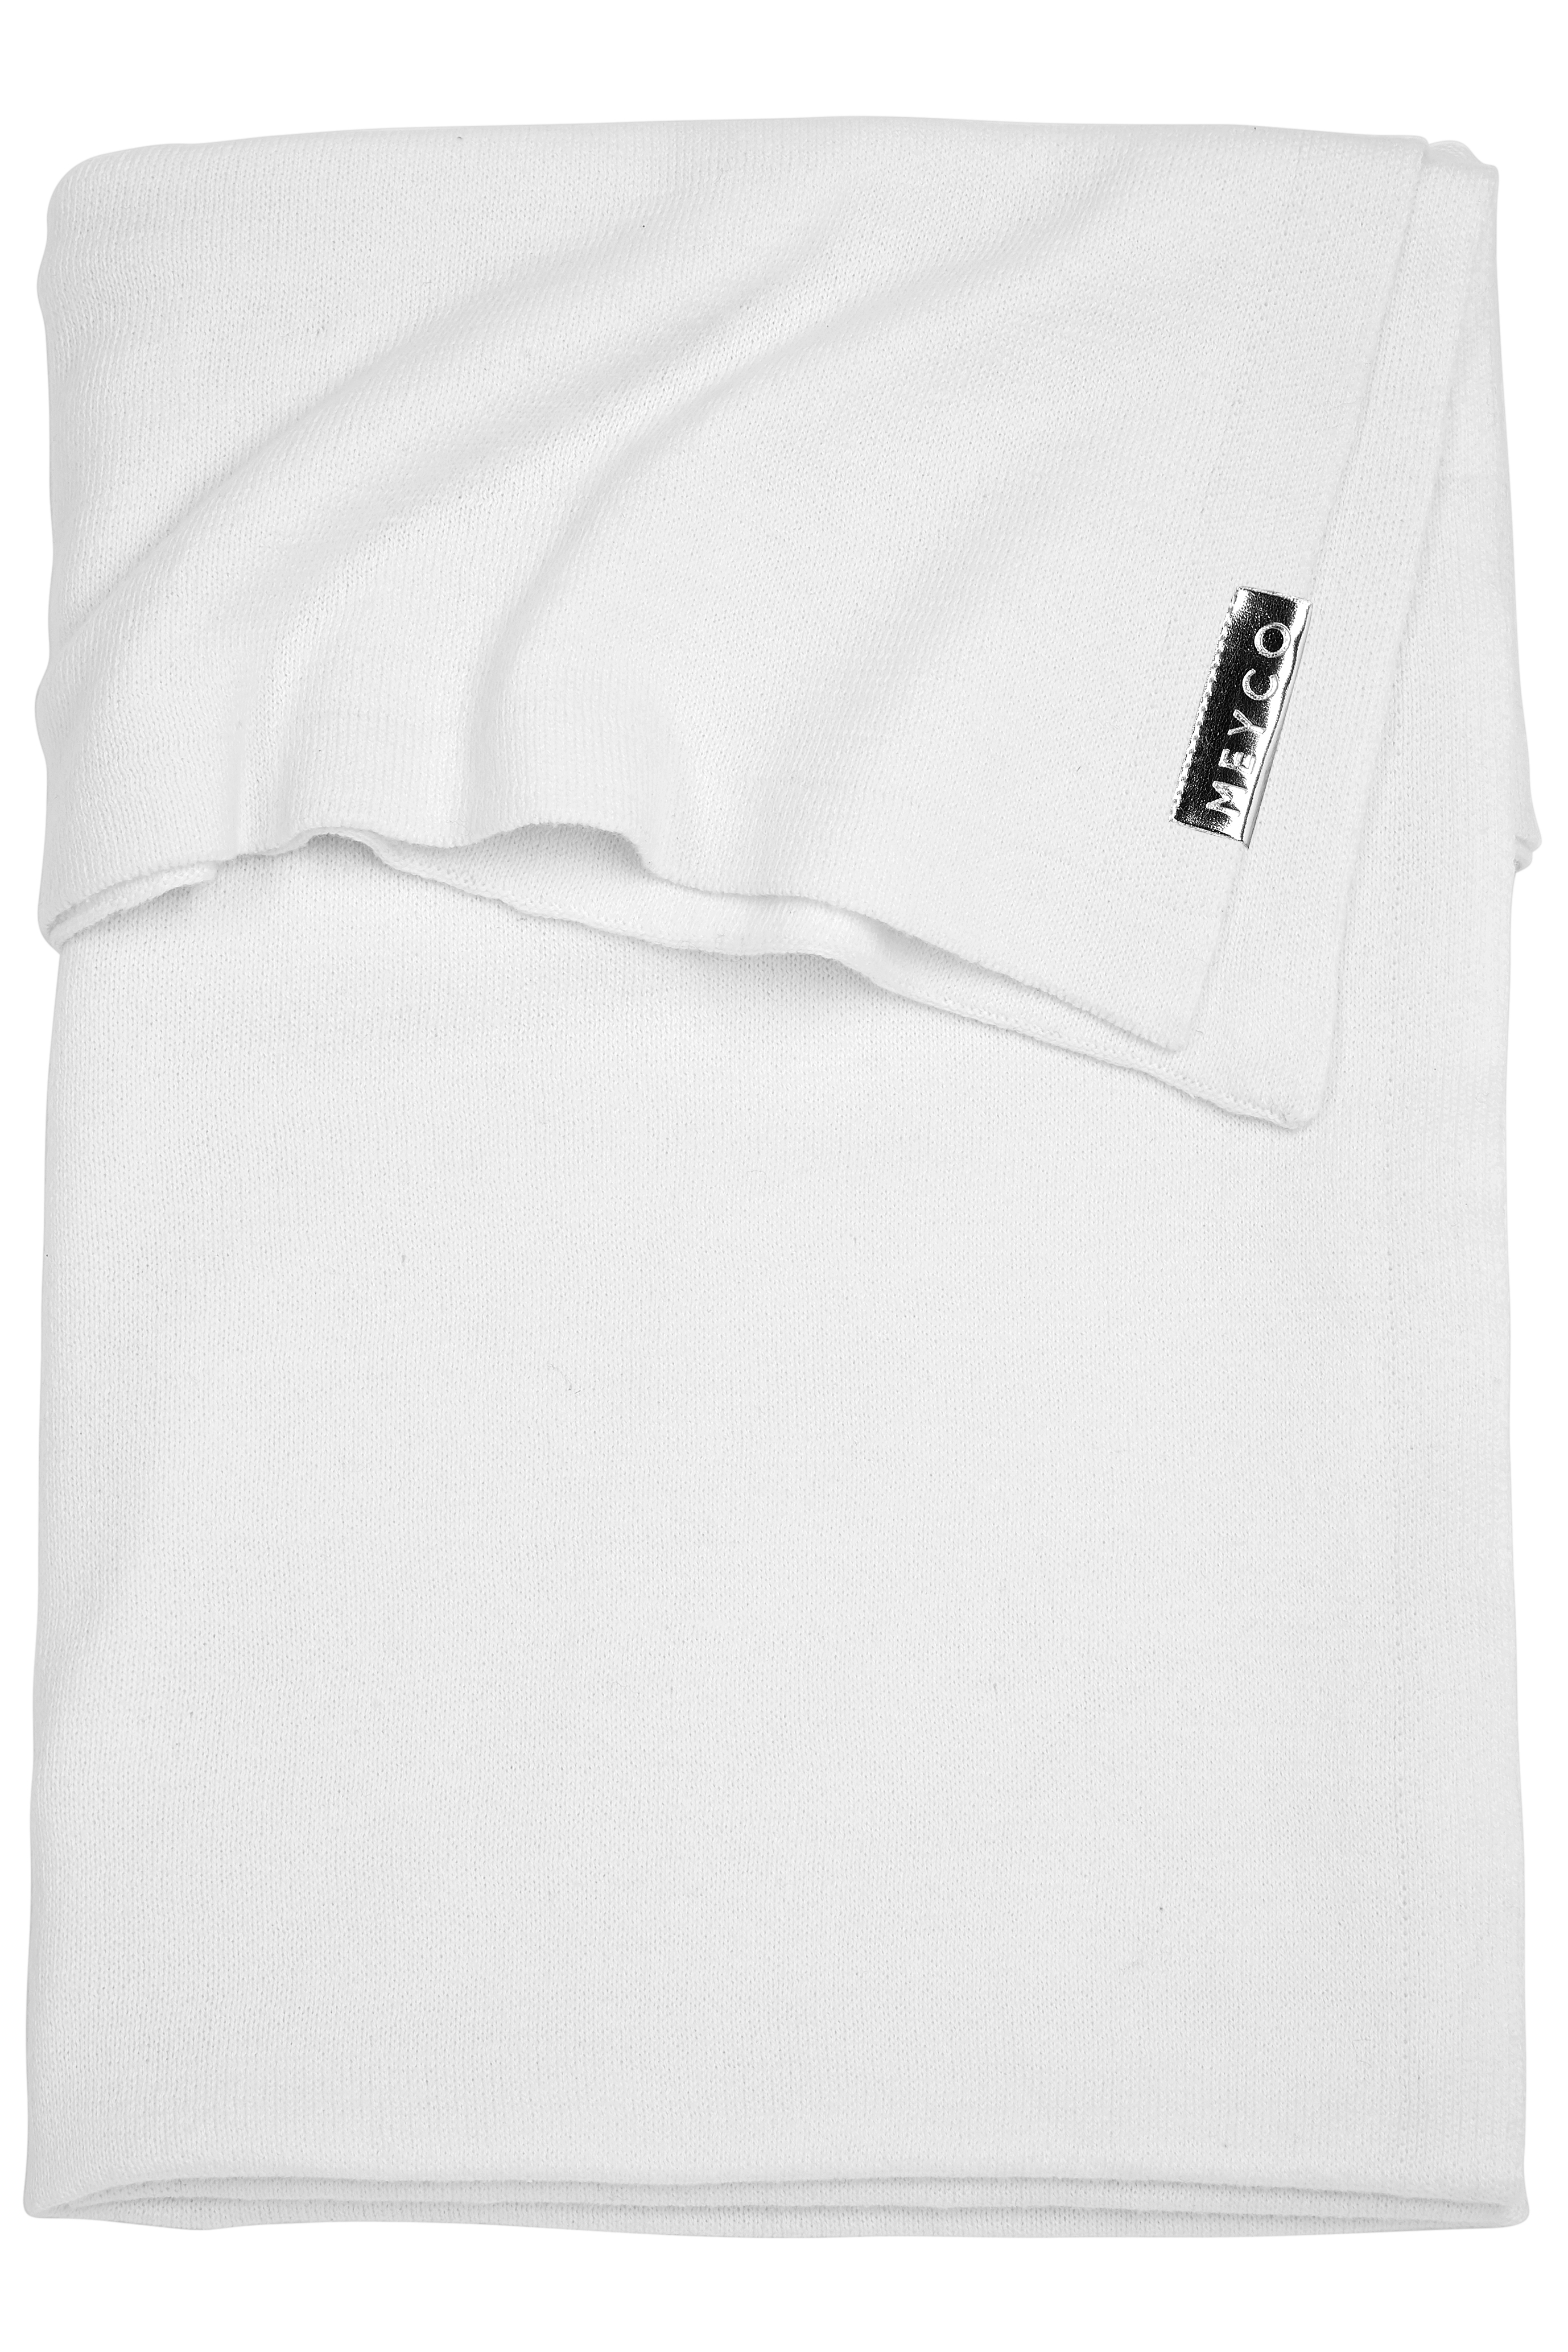 Crib Blanket Knit Basic - Warm White - 75X100cm